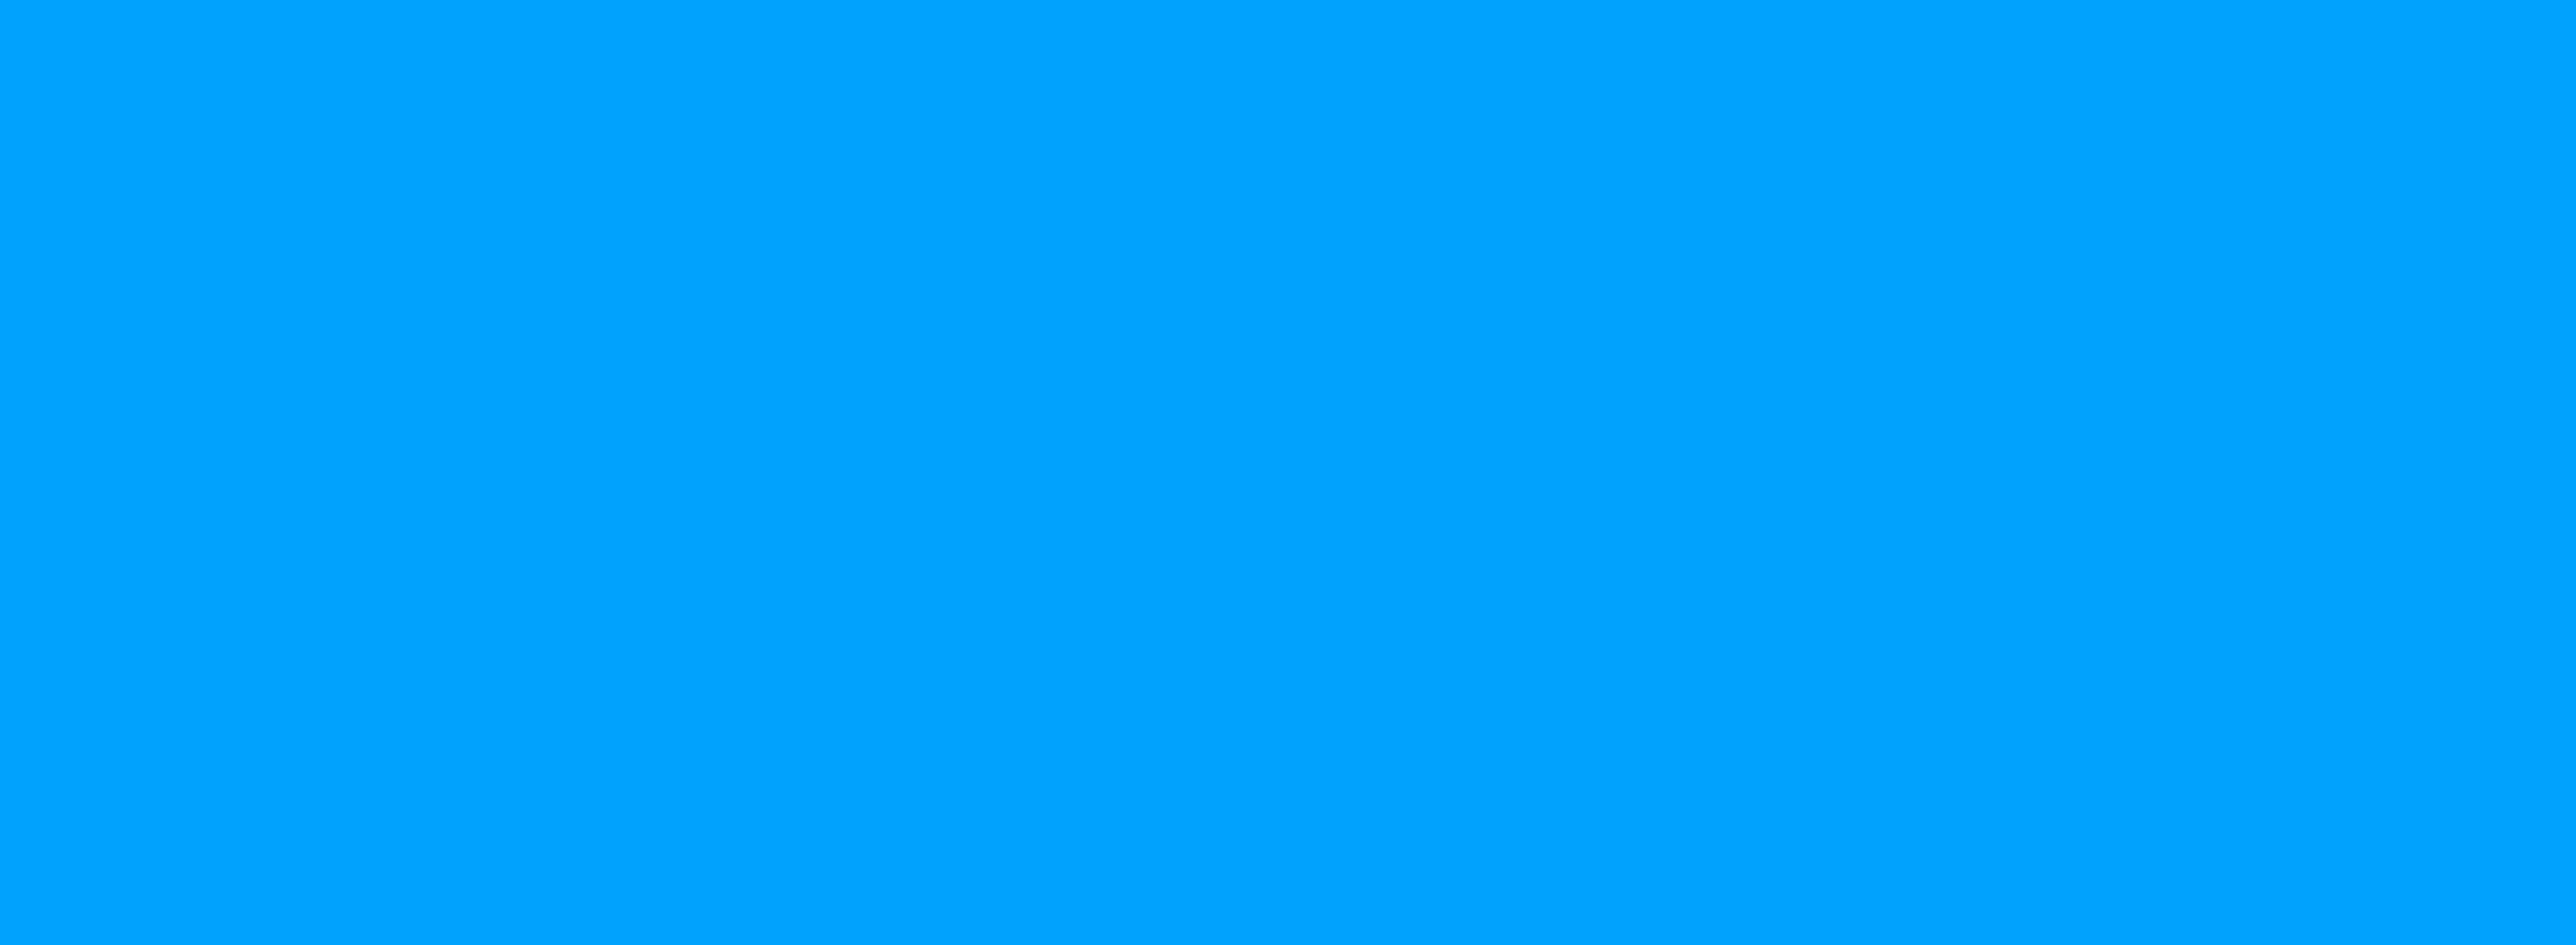 Plain blue colour block